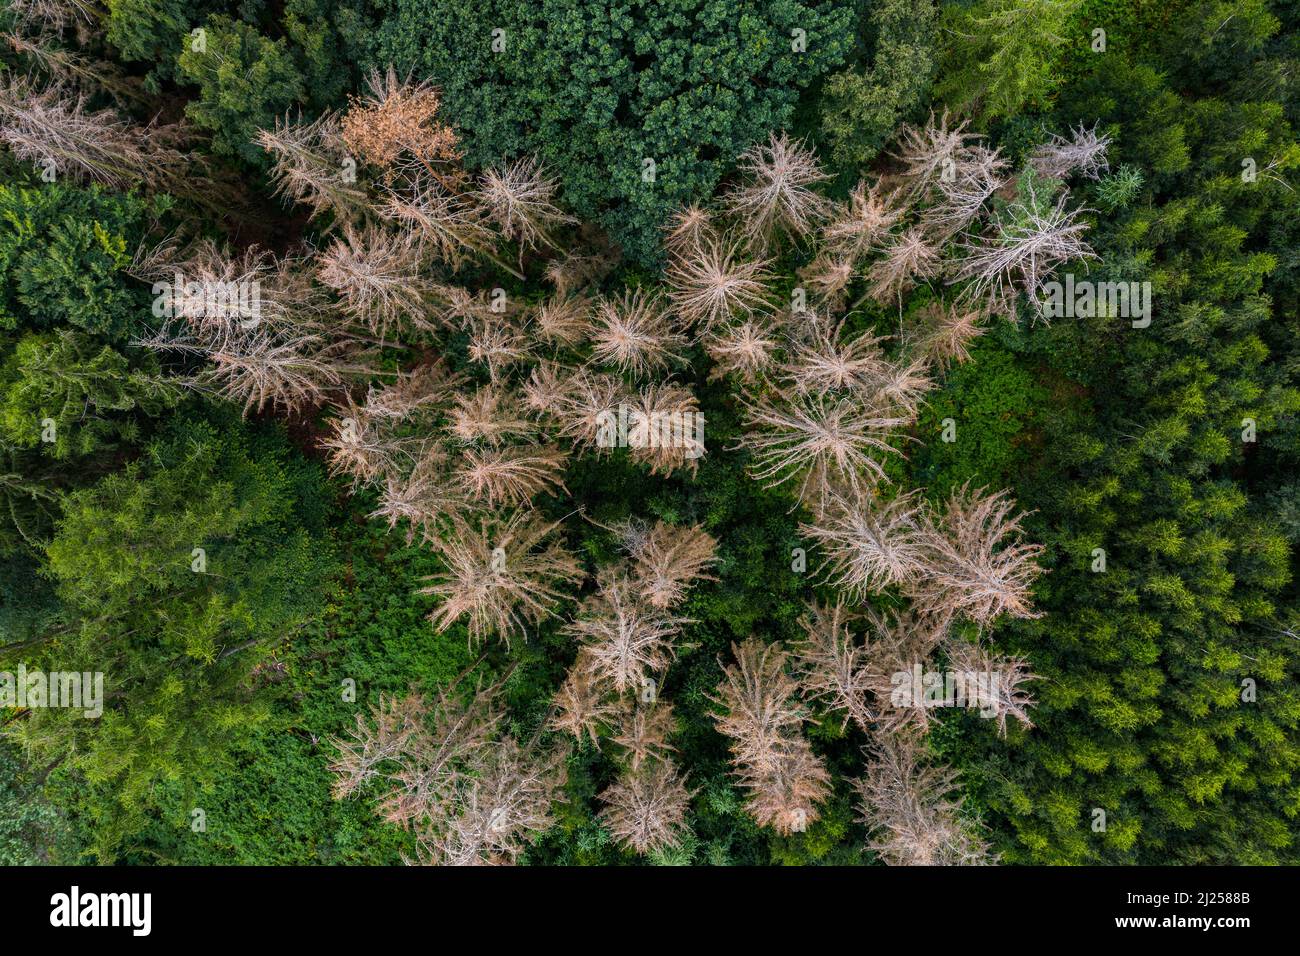 Foresta dieback - conifere nei boschi muoiono a causa della siccità e del cambiamento climatico Foto Stock